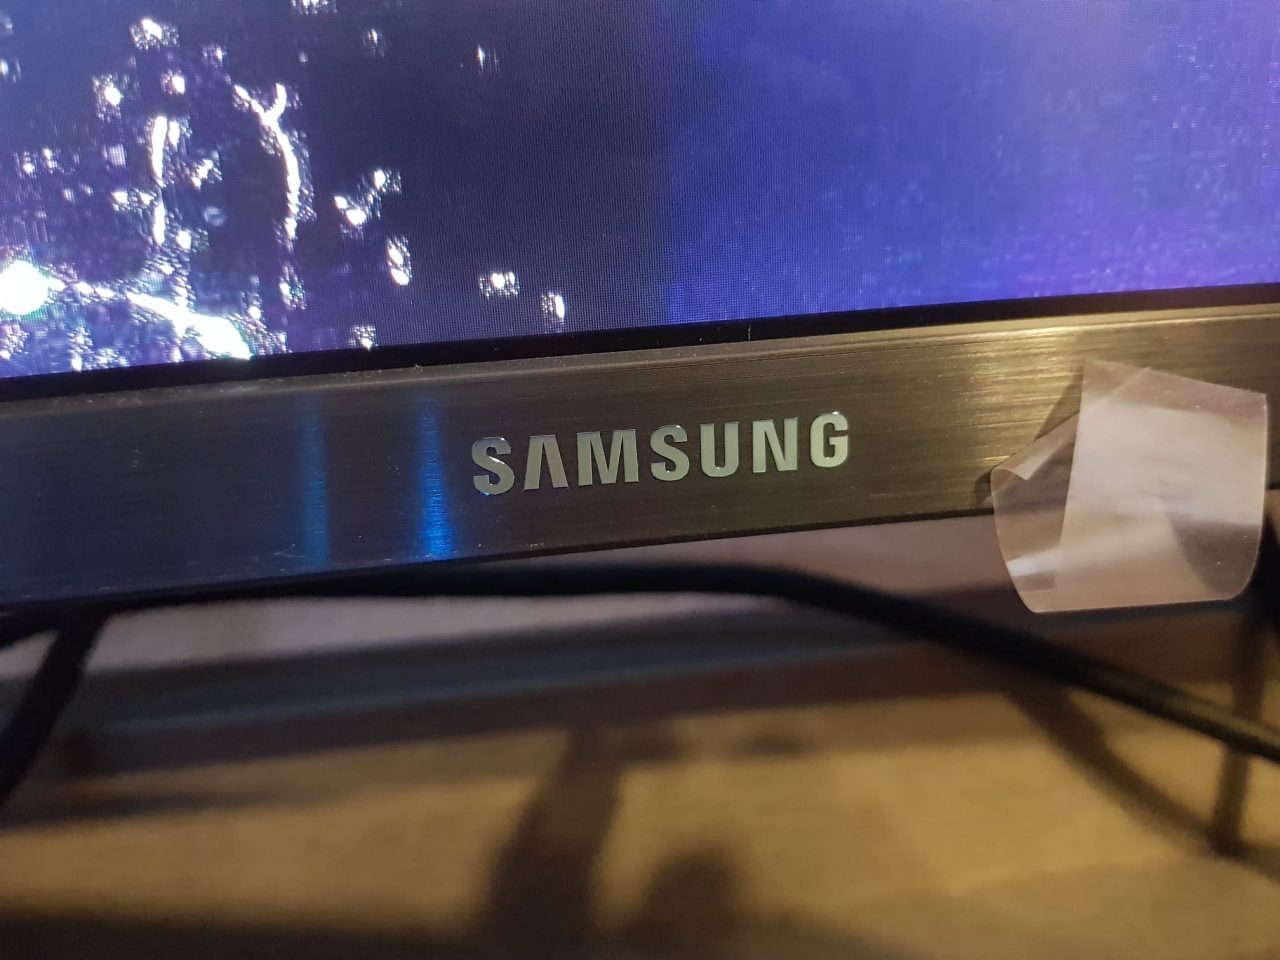 Samsung LC49RG90: El nuevo monitor monstruosamente absurdo de mi hermano